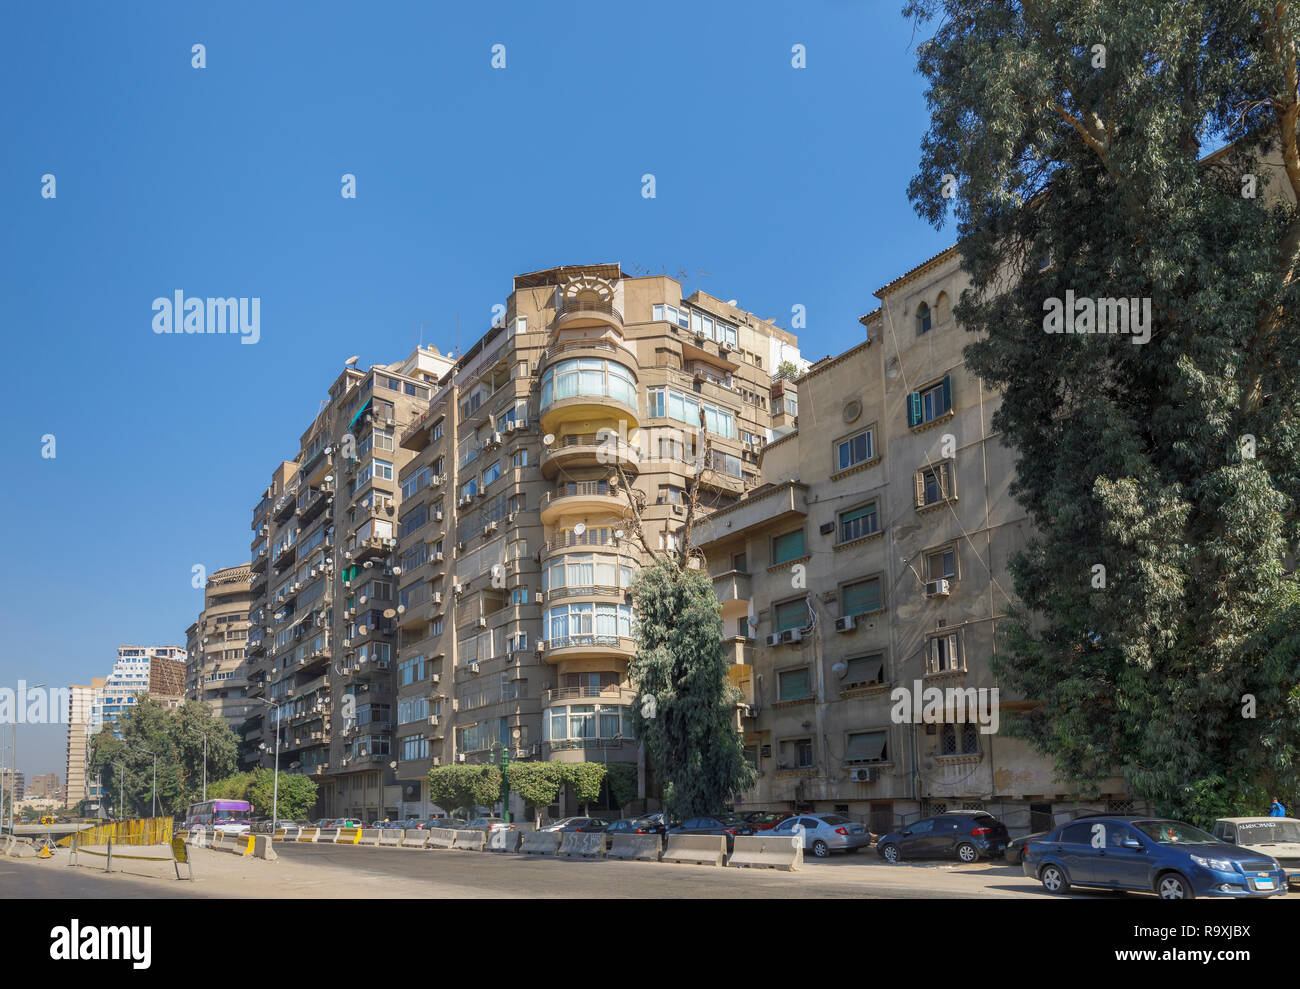 Scena di strada in Giza, Cairo, Egitto con tipica strada grande appartamento residenziale blocco con parabole satellitari ed aria esterna unità di condizionamento Foto Stock